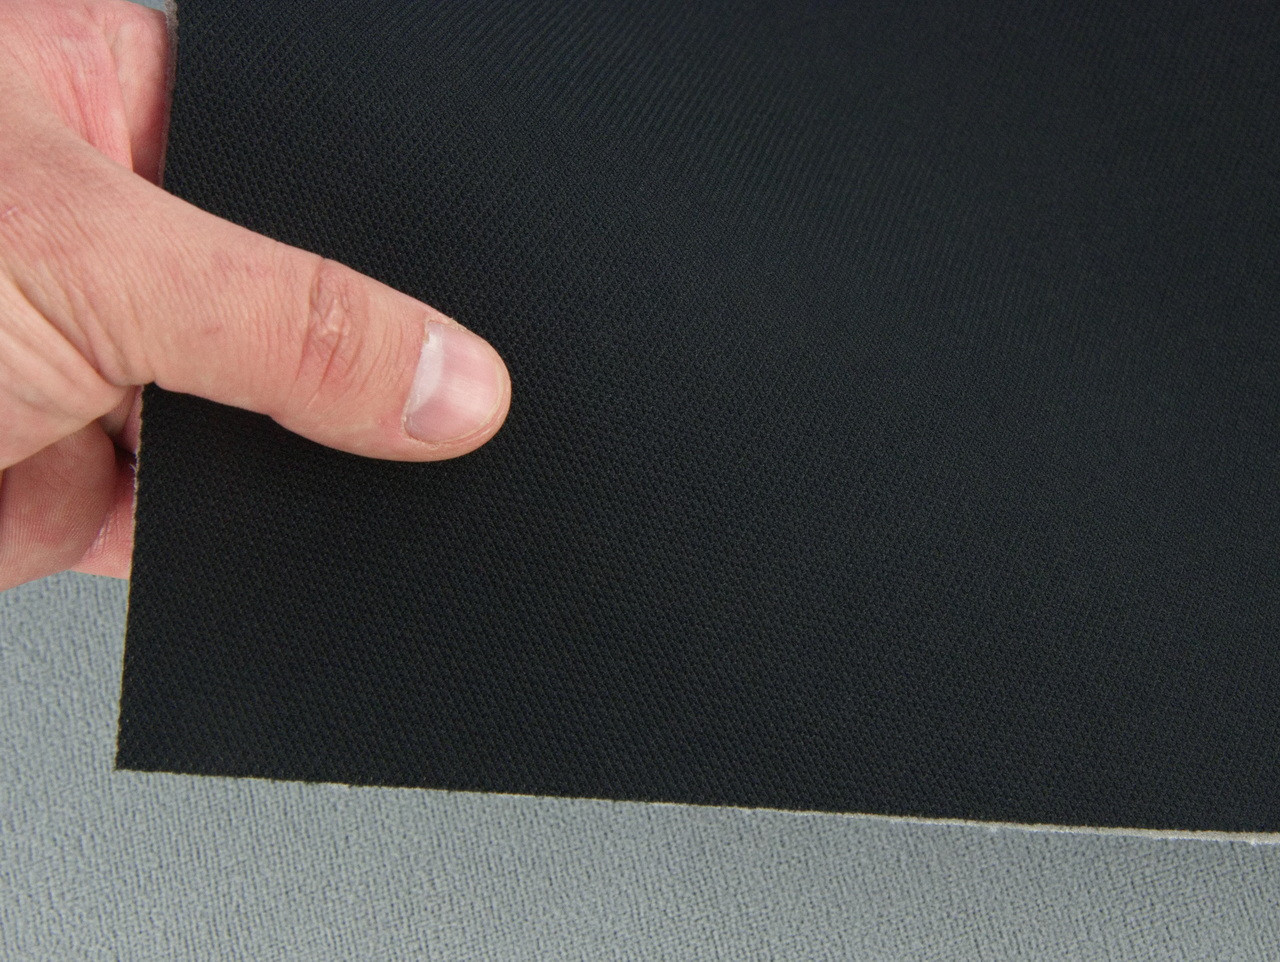 Автоткань потолочная сетчатая Zeus 158, цвет черный, на поролоне 3мм с сеткой, ширина 1.7м, Турция детальная фотка